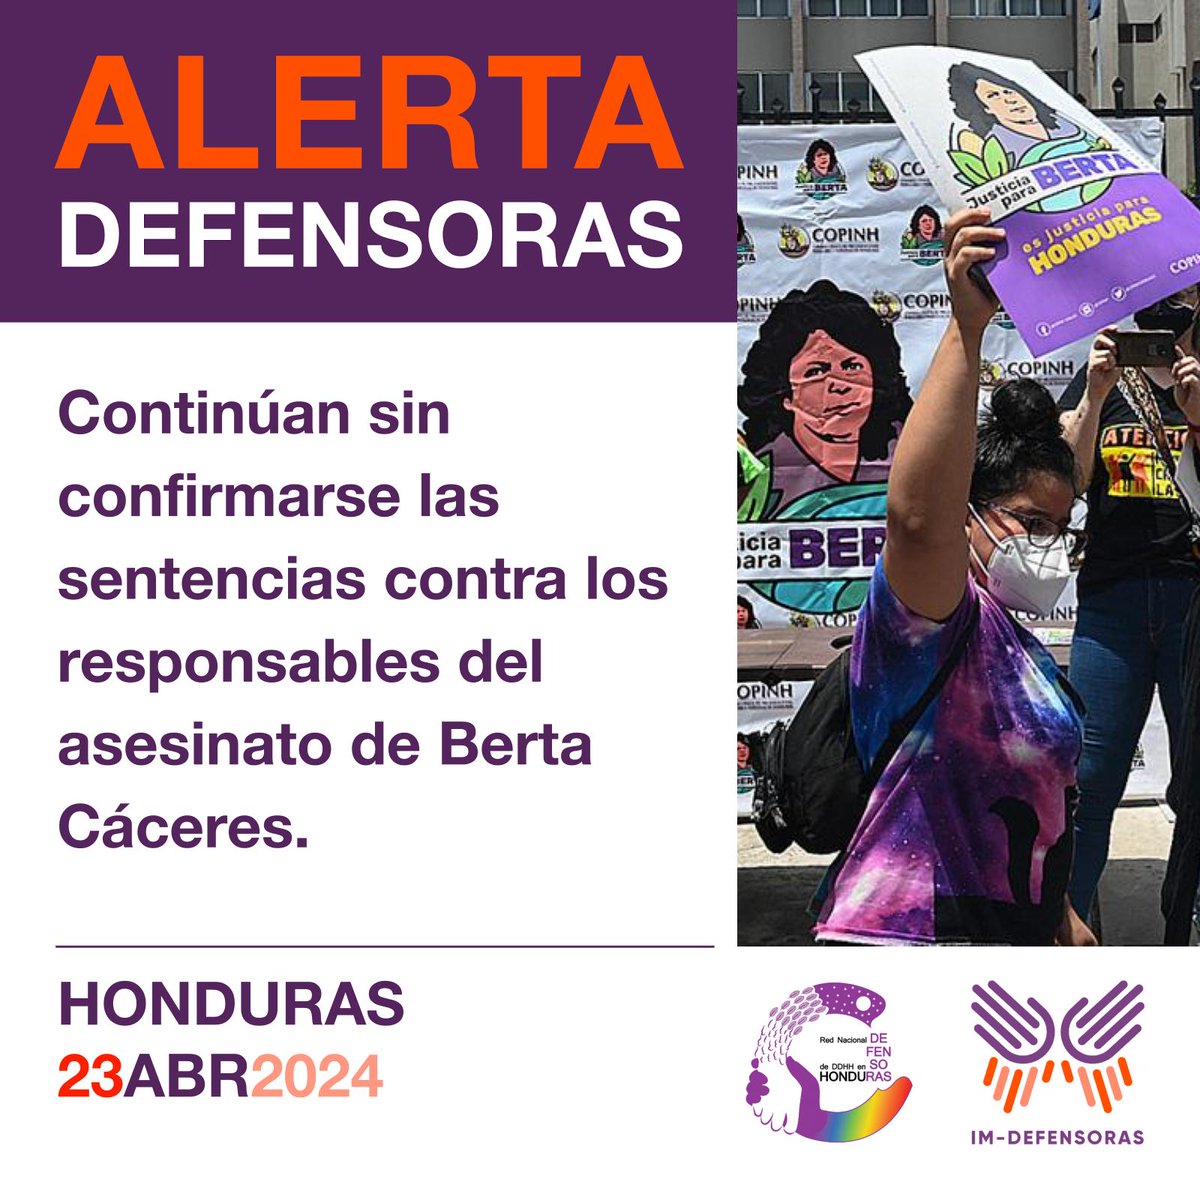 📢⚠️🚨#AlertaDefensoras HONDURAS / Continúan sin confirmarse las sentencias contra los responsables del asesinato de Berta Cáceres. 📌Más información➡️bit.ly/3U8ZsZP